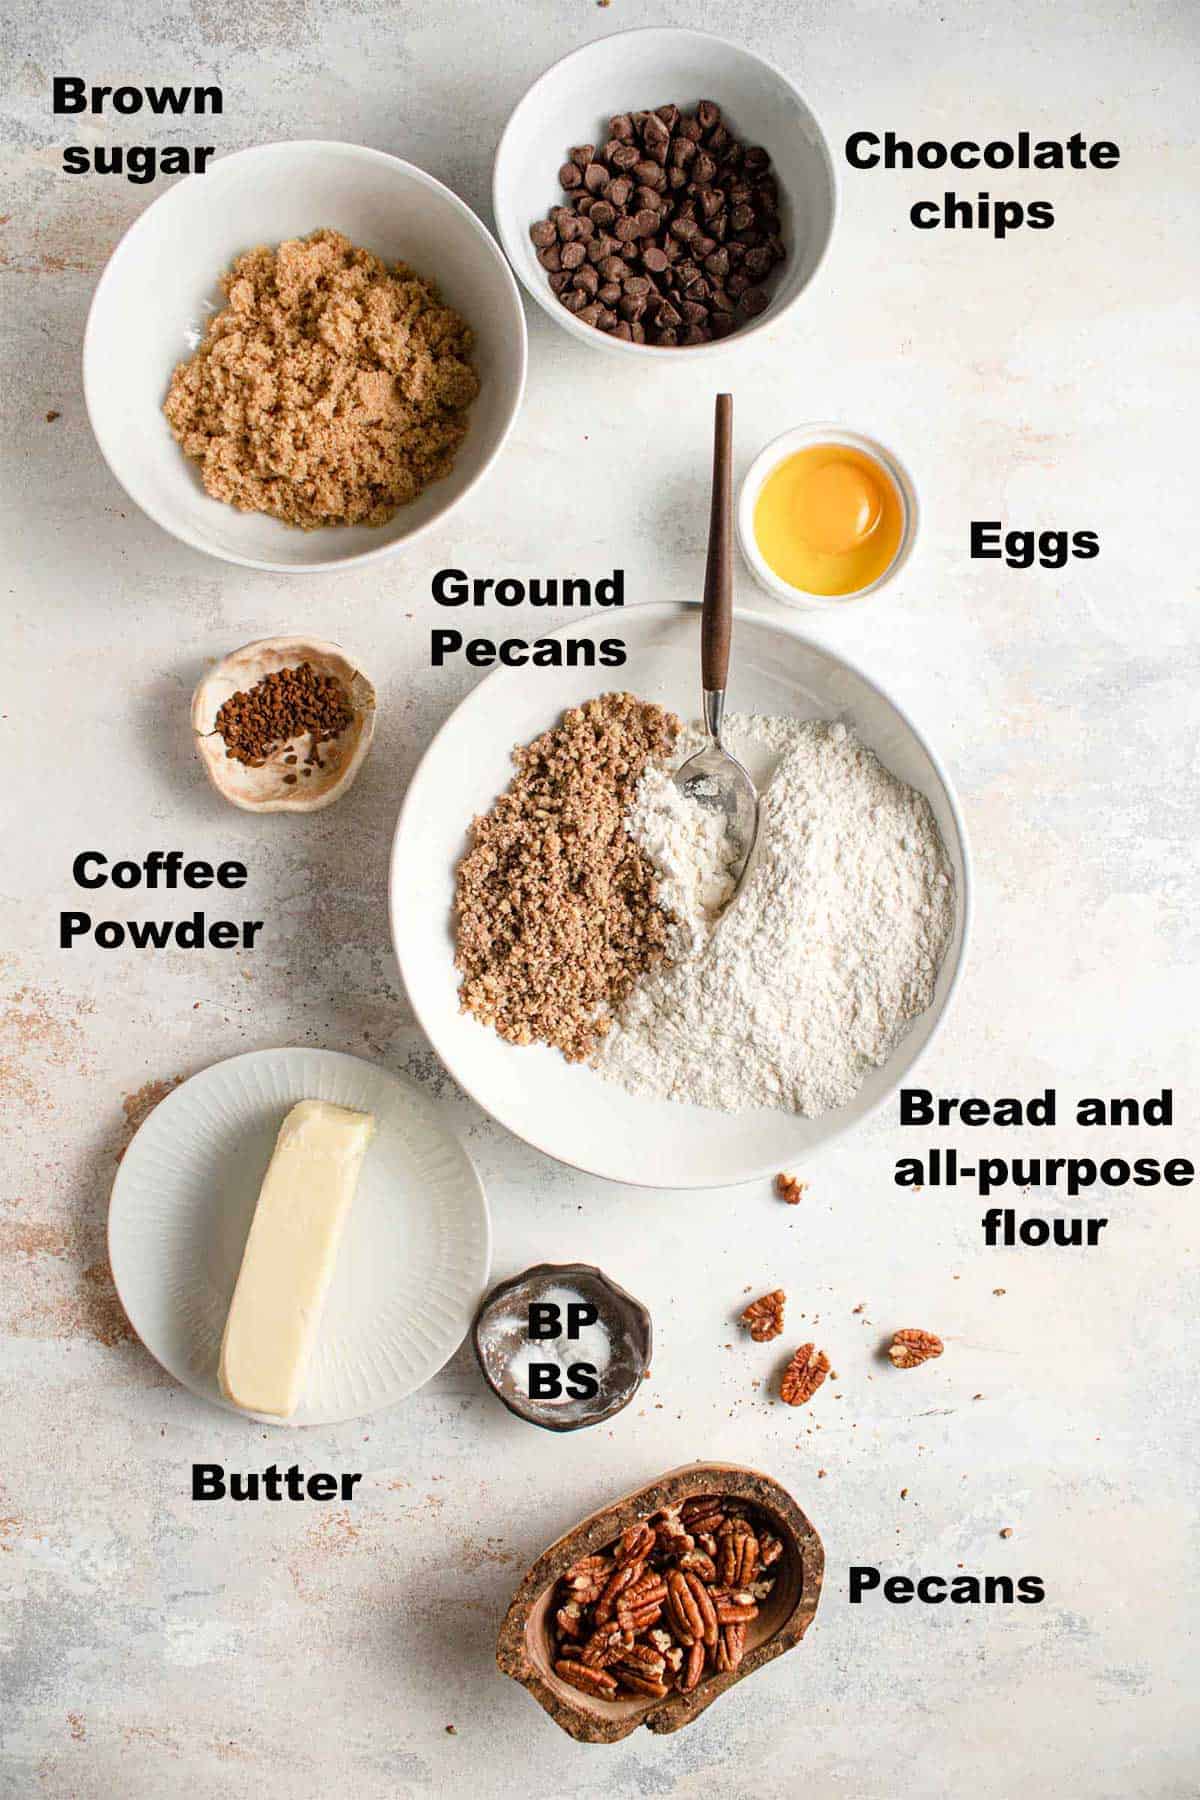 Ingredients to make cookies